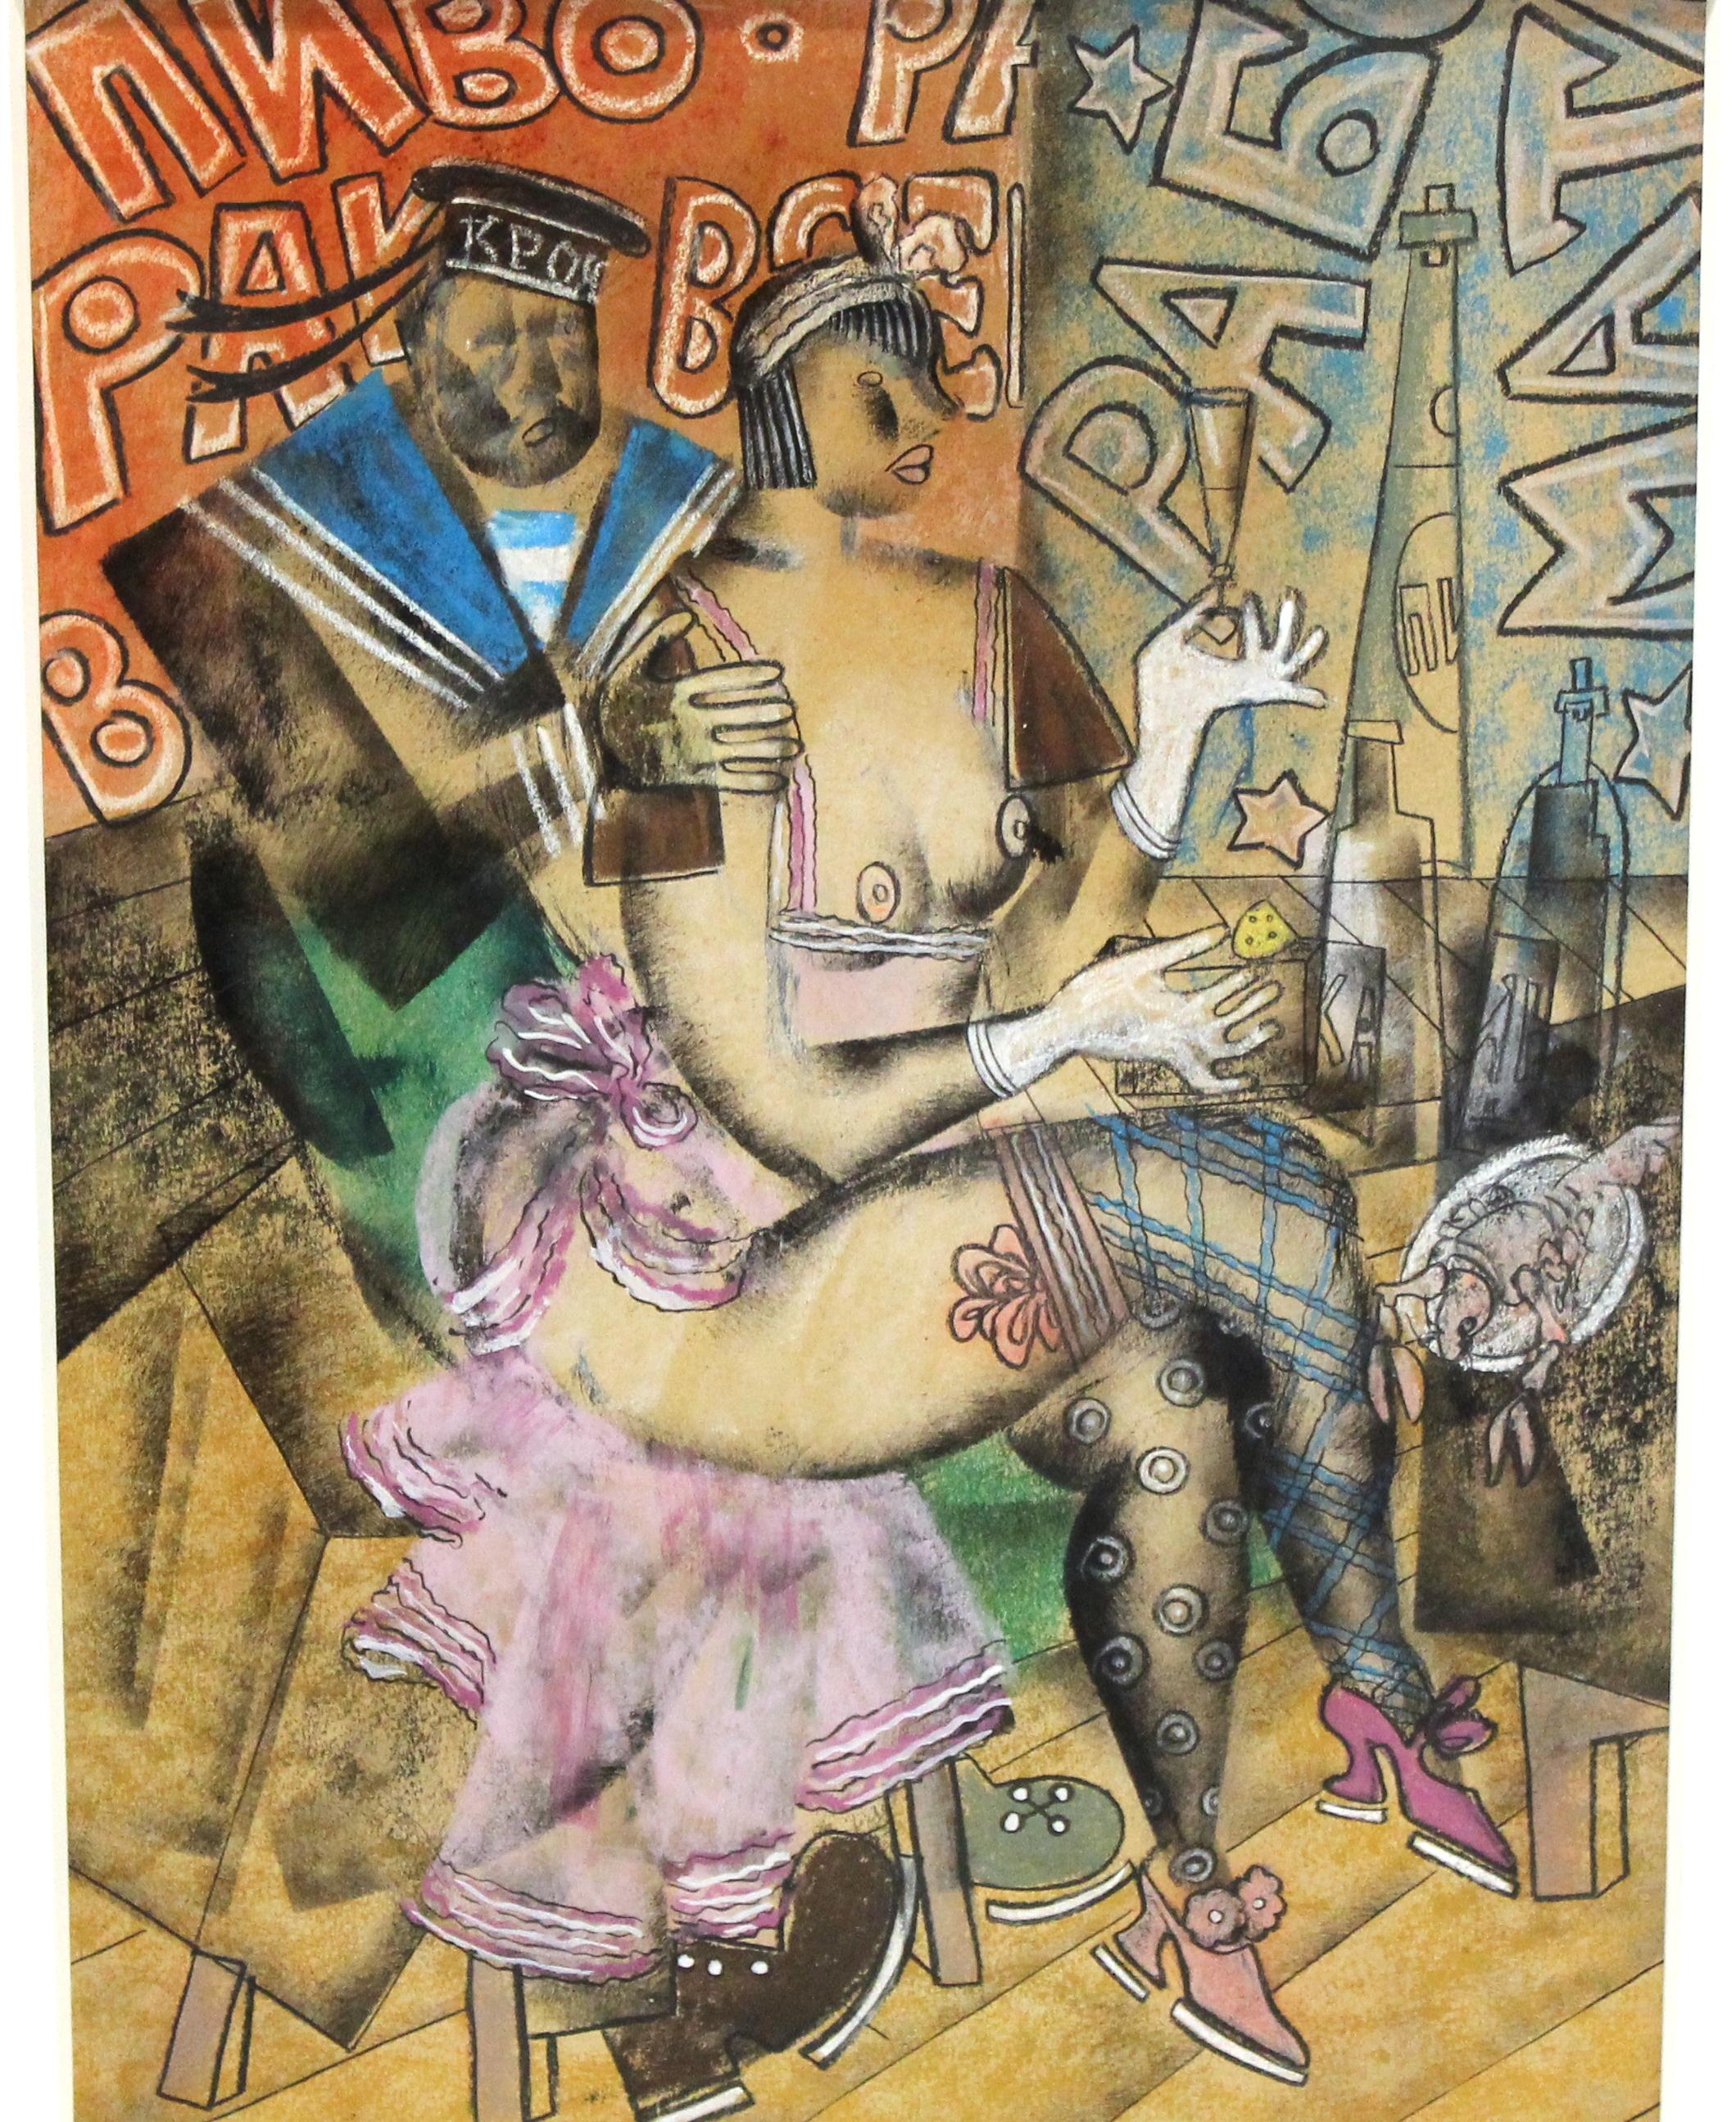 Vladimir Lebedev (1891 - 1967) Œuvre d'avant-garde russe en techniques mixtes sur papier (encre, gouache, crayon) représentant une ouvrière nue assise en compagnie d'un marin. L'œuvre comporte des éléments visibles de la propagande bolchevique et a